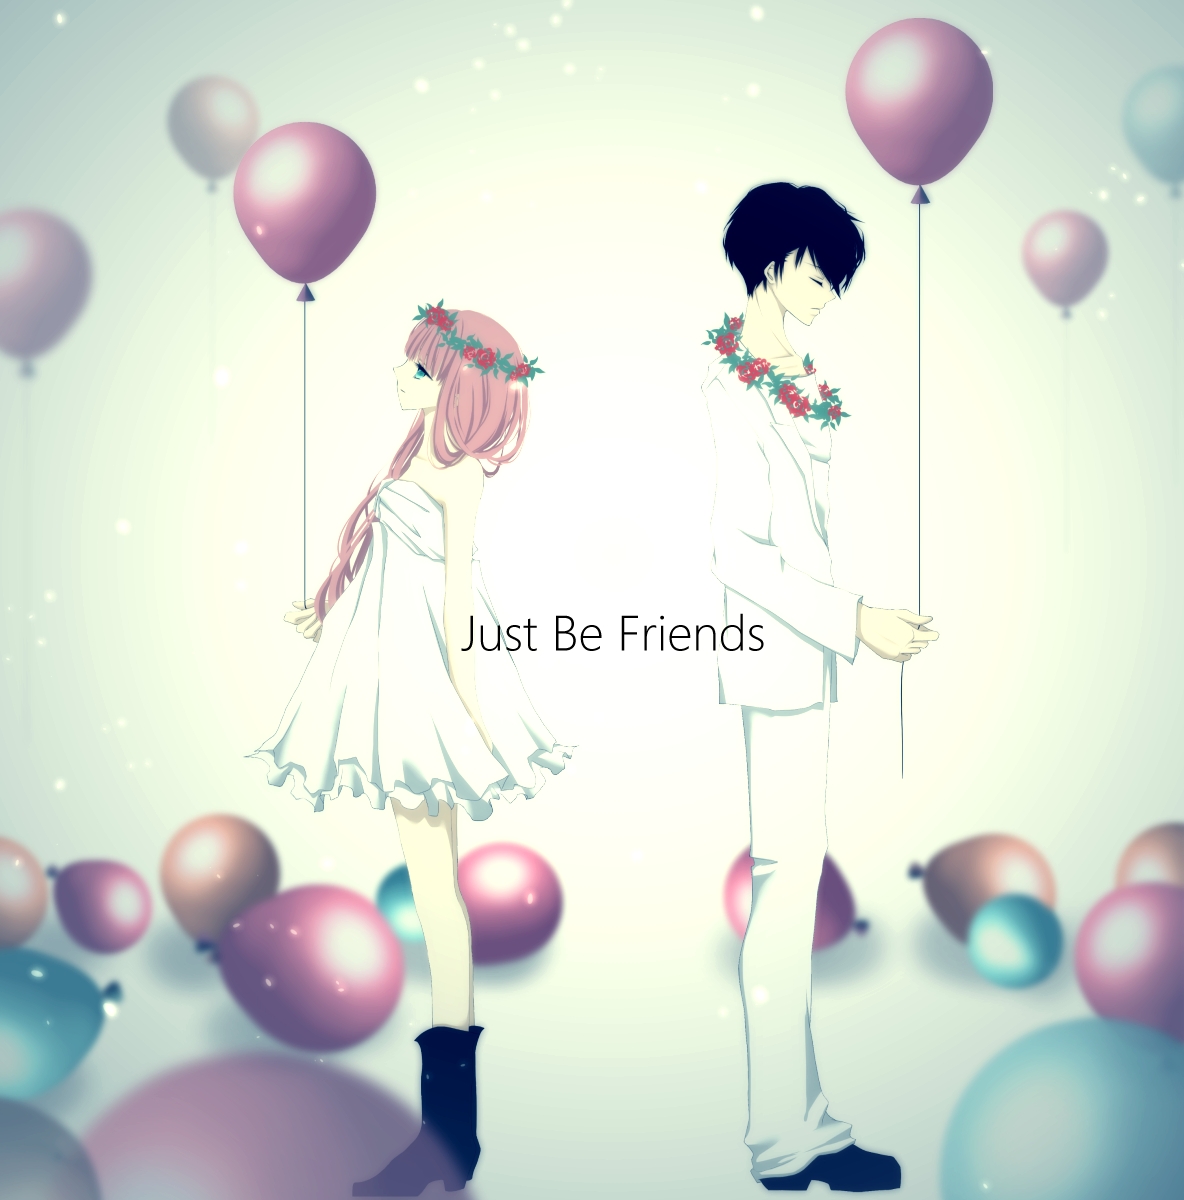 Фото Vocaloid Megurine Luka / Вокалоид Мегурине Лука и темноволосый парень с воздушными шариками в руках, art by aonoe (Just Be Friends)